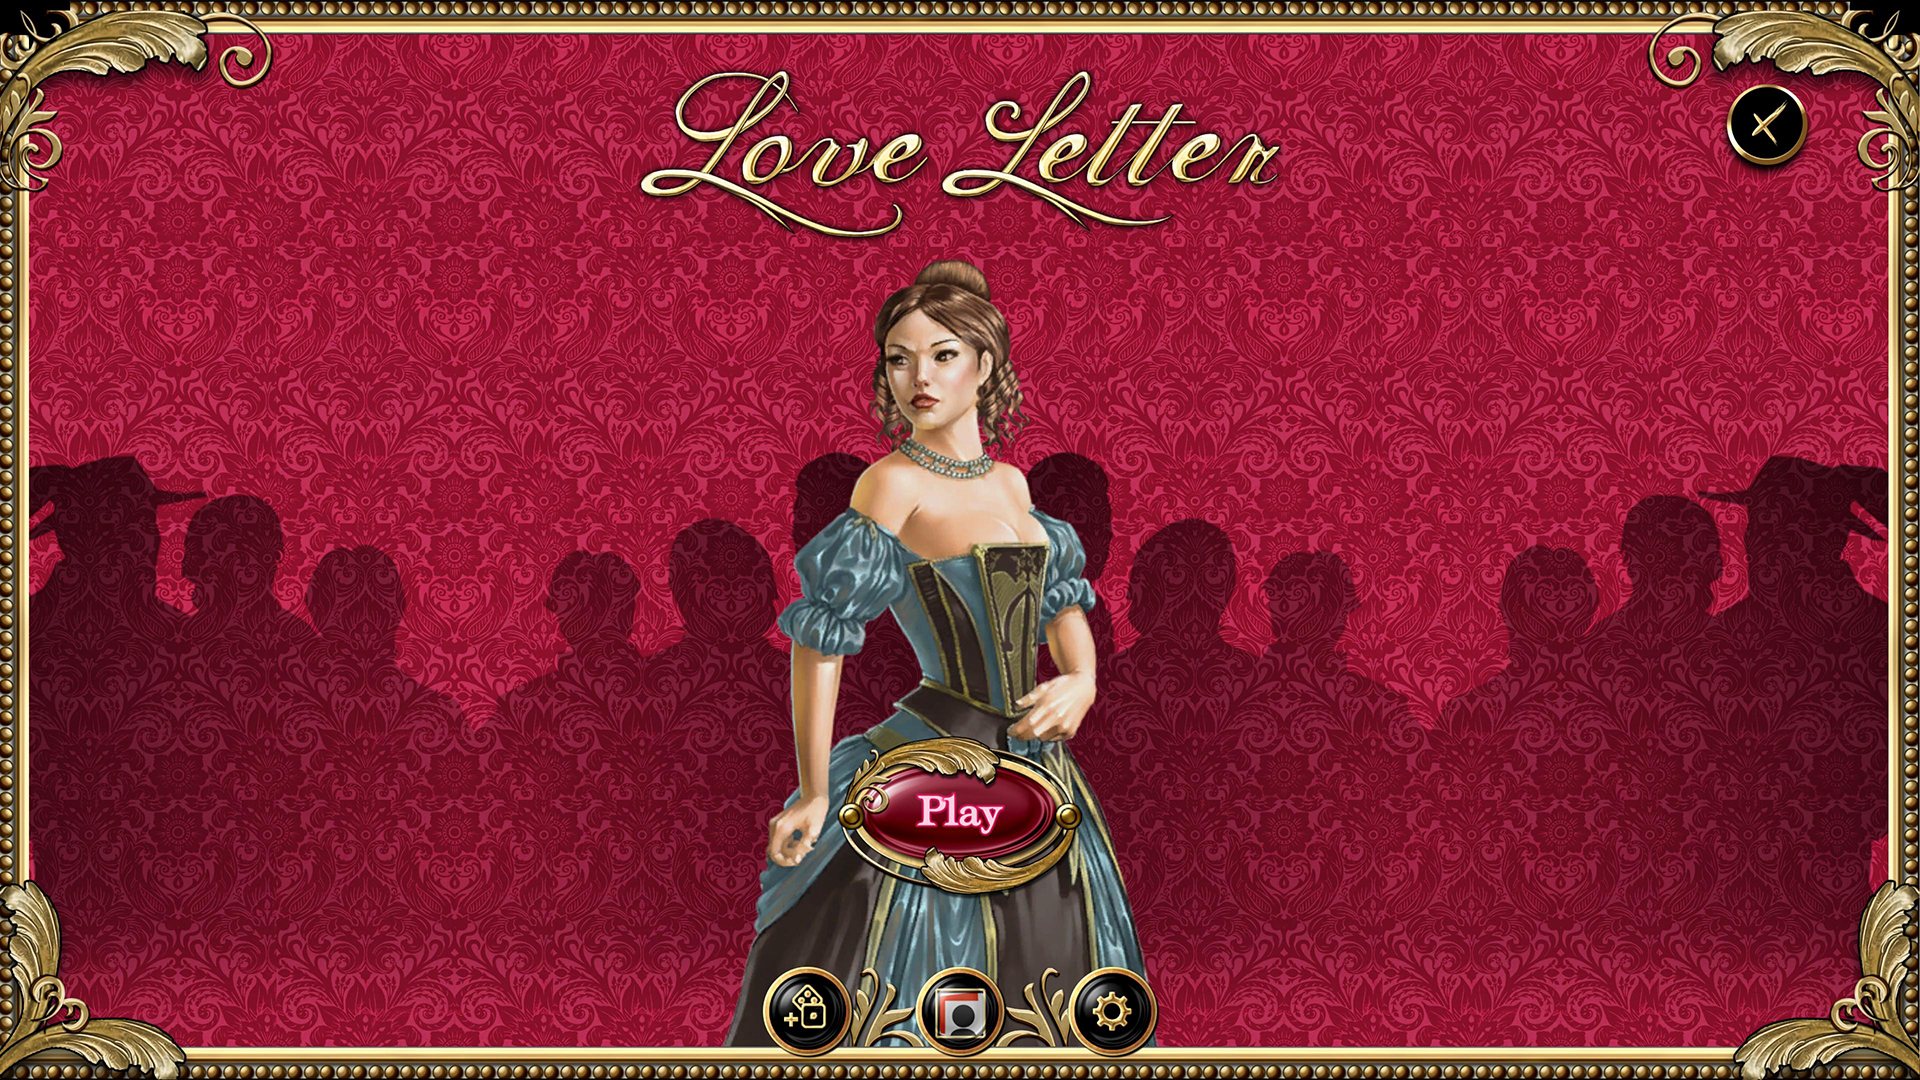 Love Letter Steam CD Key, 0.26$